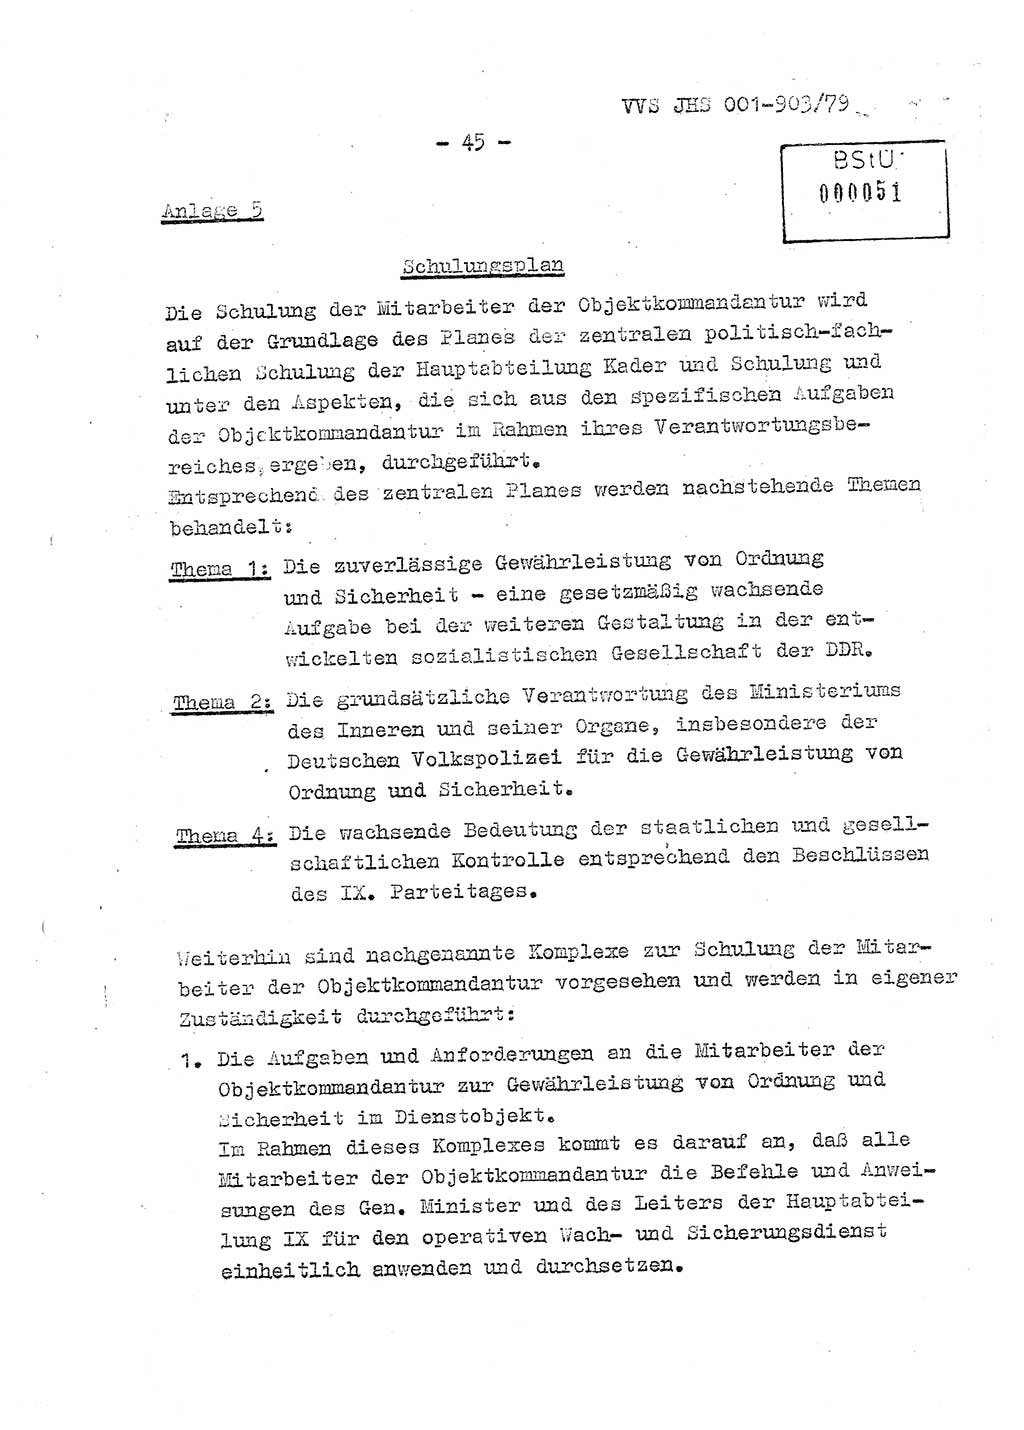 Fachschulabschlußarbeit Oberleutnant Jochen Pfeffer (HA Ⅸ/AGL), Ministerium für Staatssicherheit (MfS) [Deutsche Demokratische Republik (DDR)], Juristische Hochschule (JHS), Vertrauliche Verschlußsache (VVS) 001-903/79, Potsdam 1979, Seite 45 (FS-Abschl.-Arb. MfS DDR JHS VVS 001-903/79 1979, S. 45)